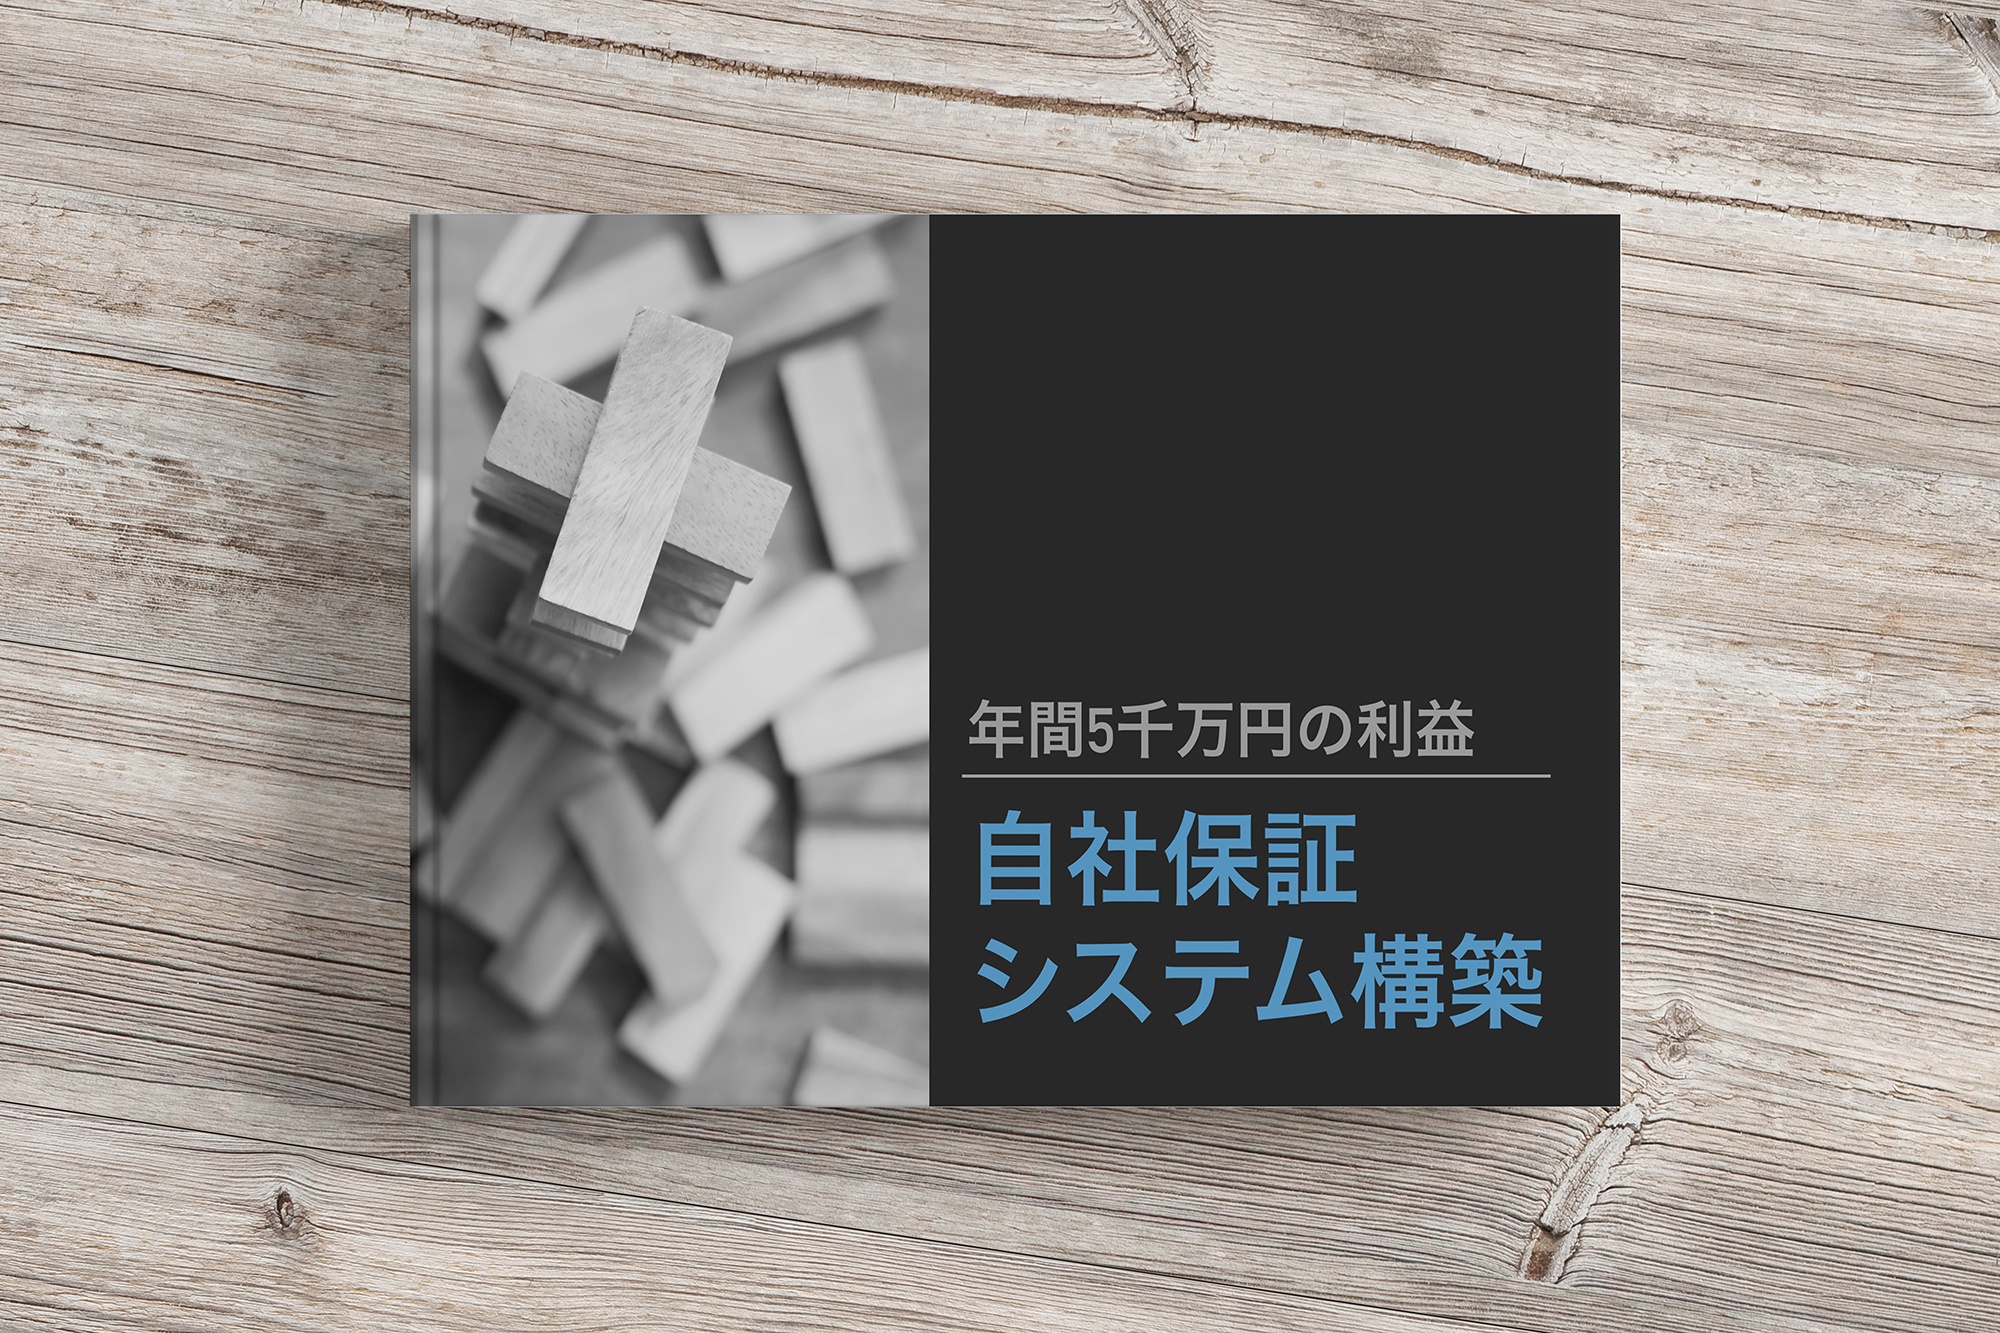 無料e-book「年間５千万円の利益 / 自社保証システム構築」